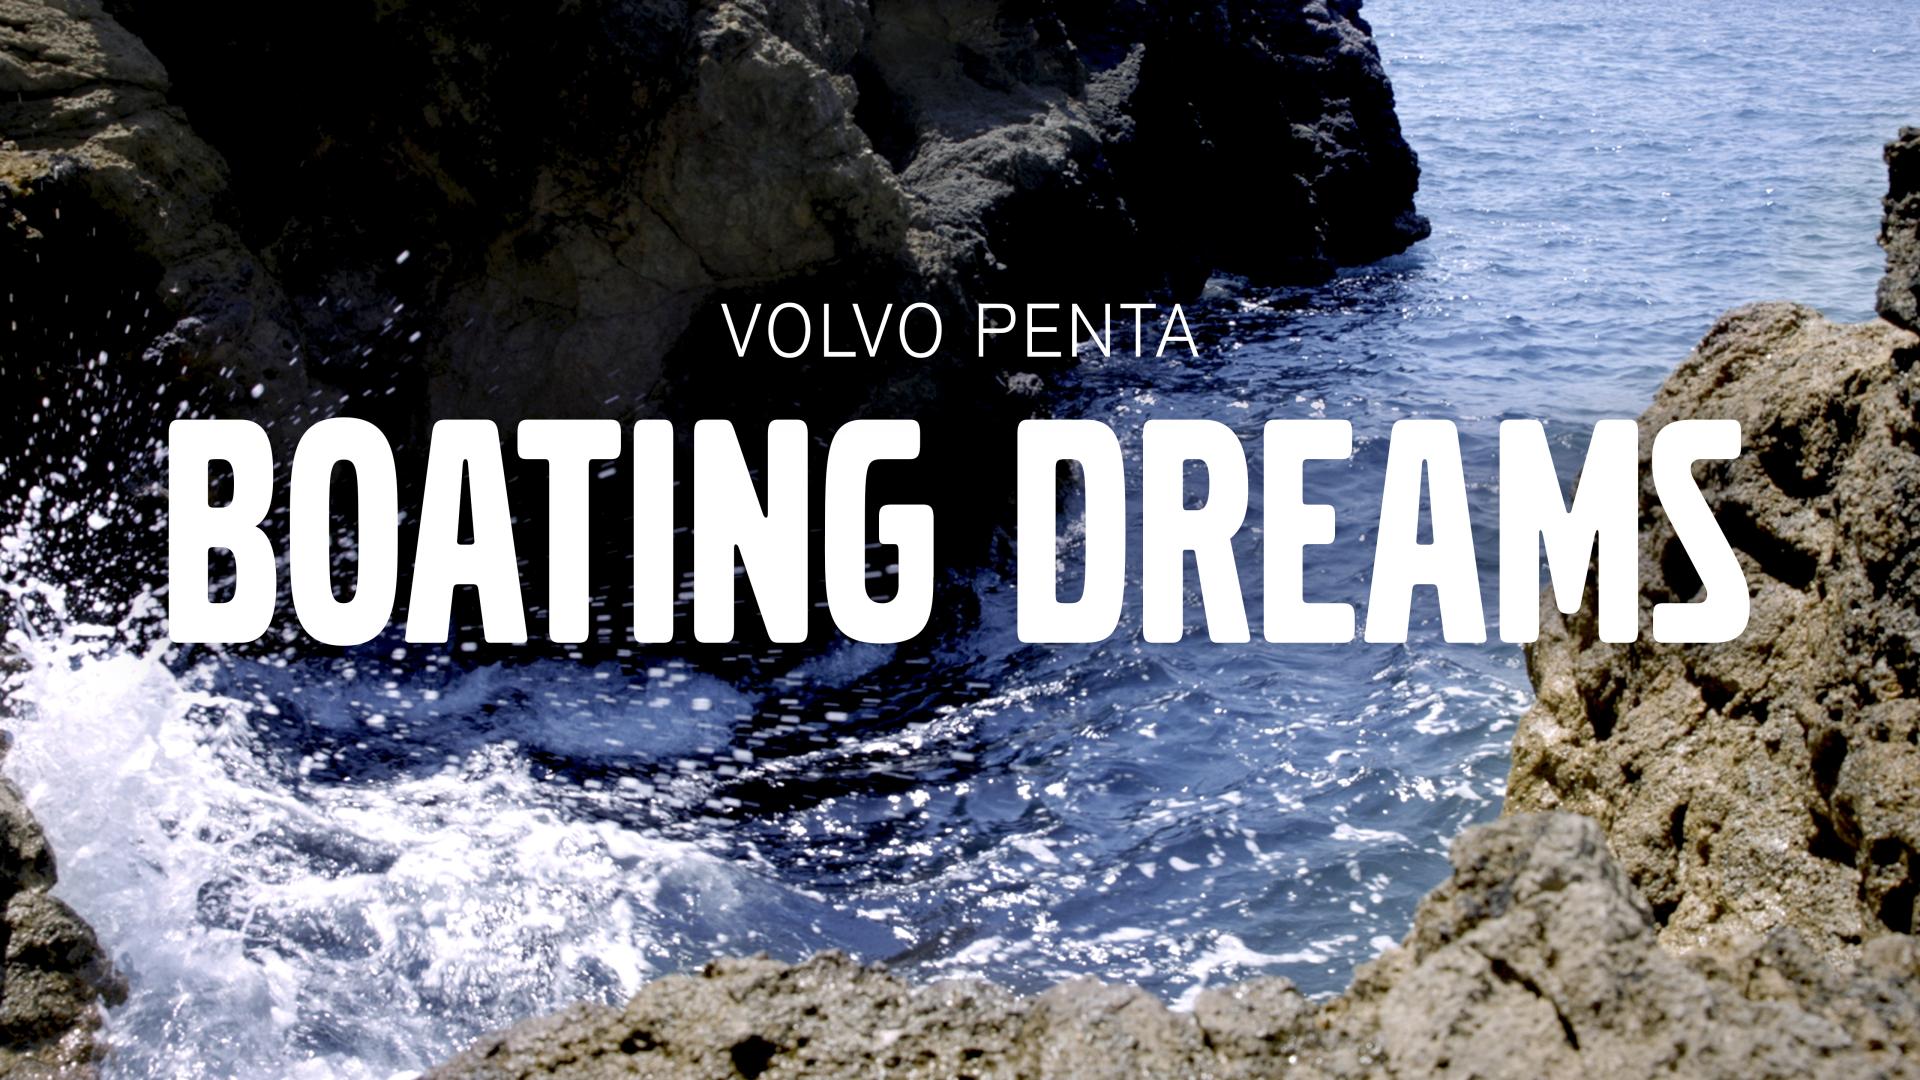 Volvo Penta Boating Dreams: new web series explores the dreams at sea